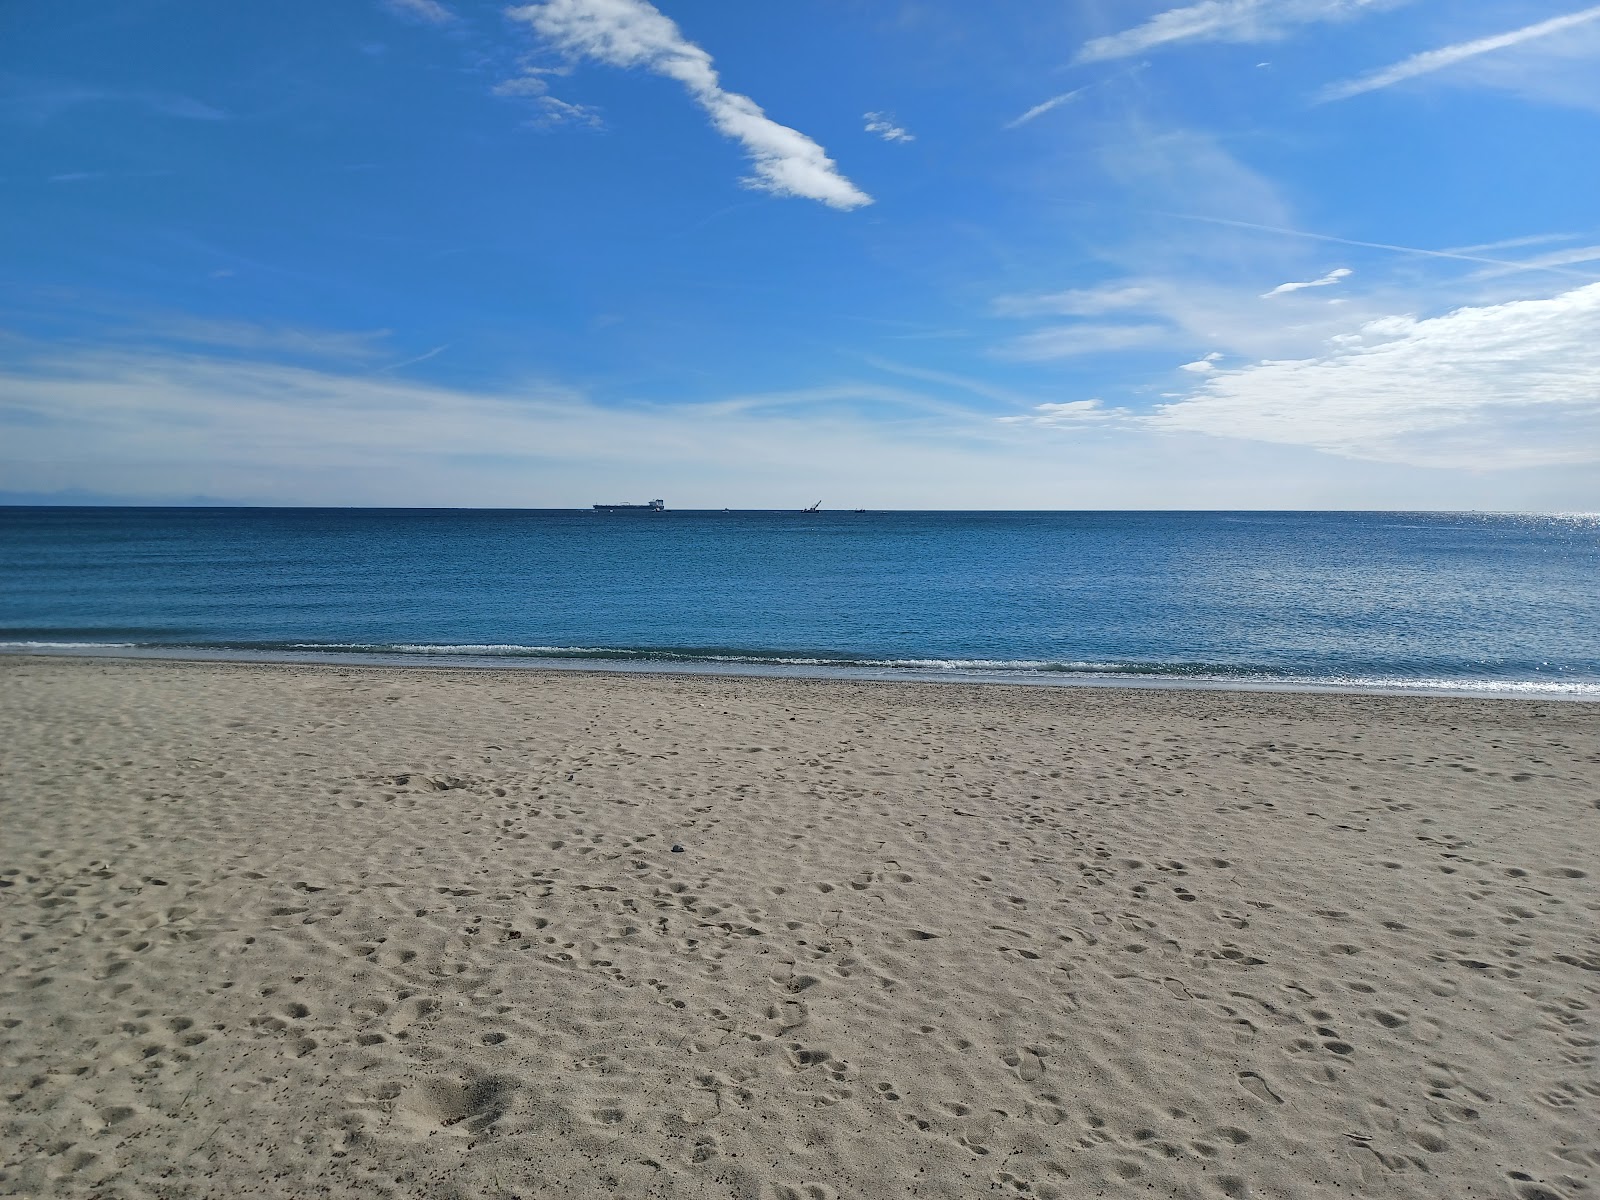 Foto de Spiaggia di Zinola - lugar popular entre los conocedores del relax